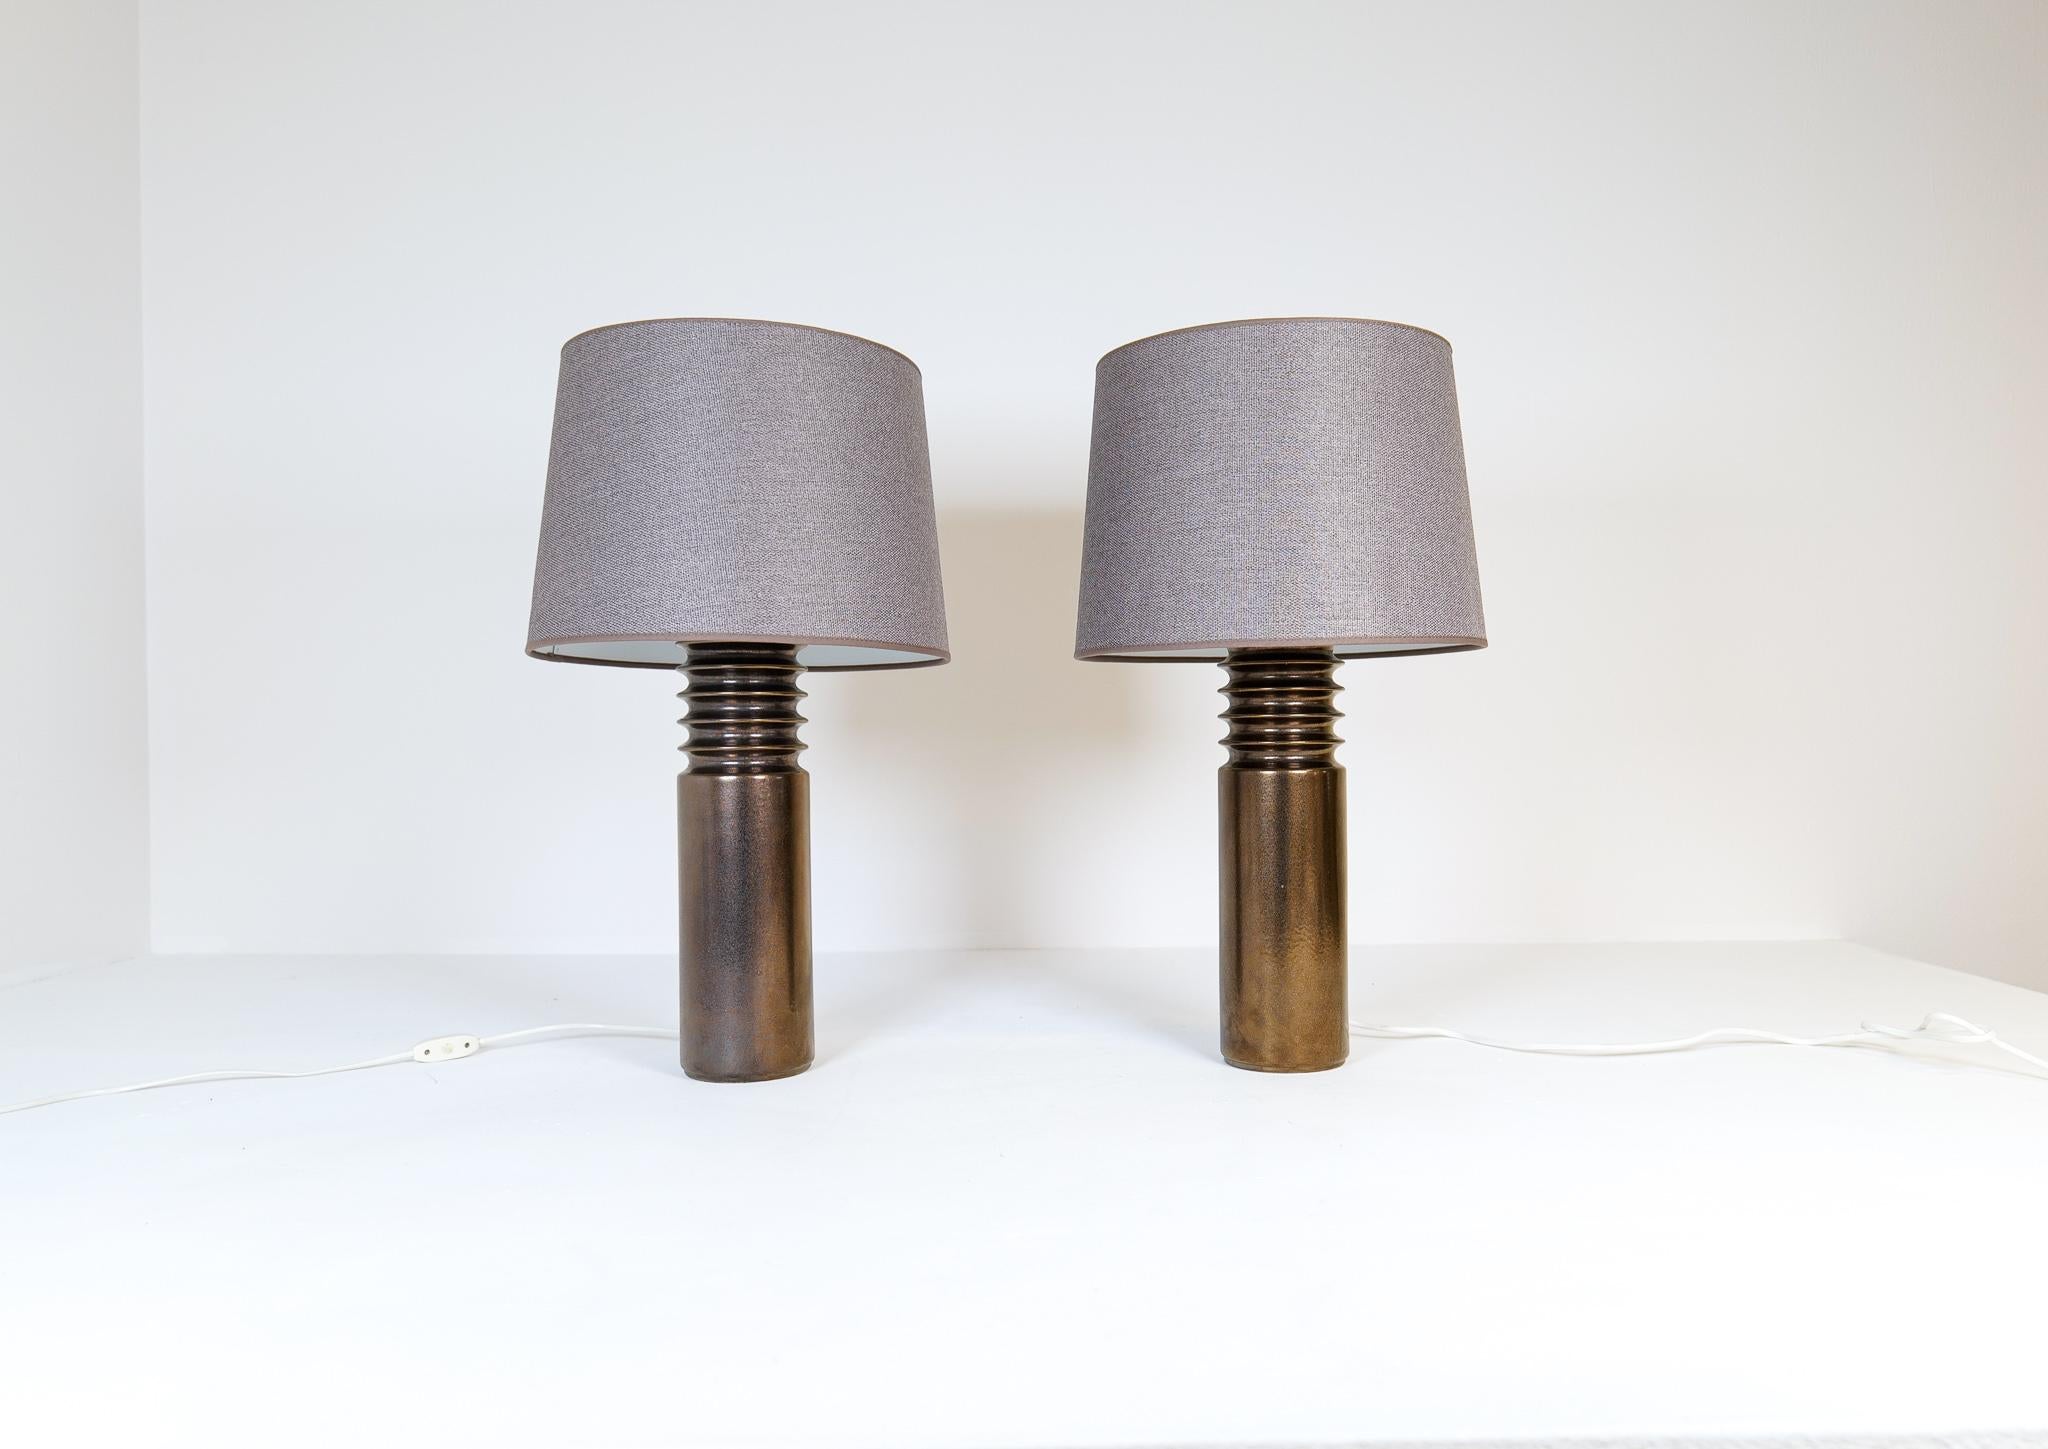 Diese Mid-Century Modern Tischlampen wurden in Schweden für Luxus hergestellt. 
Die Lampen sind aus bronze/goldfarbener Keramik mit neuen Qualitätsschirmen, die in Schweden hergestellt werden. 
Skulpturaler und typischer Look des Schweden der frühen